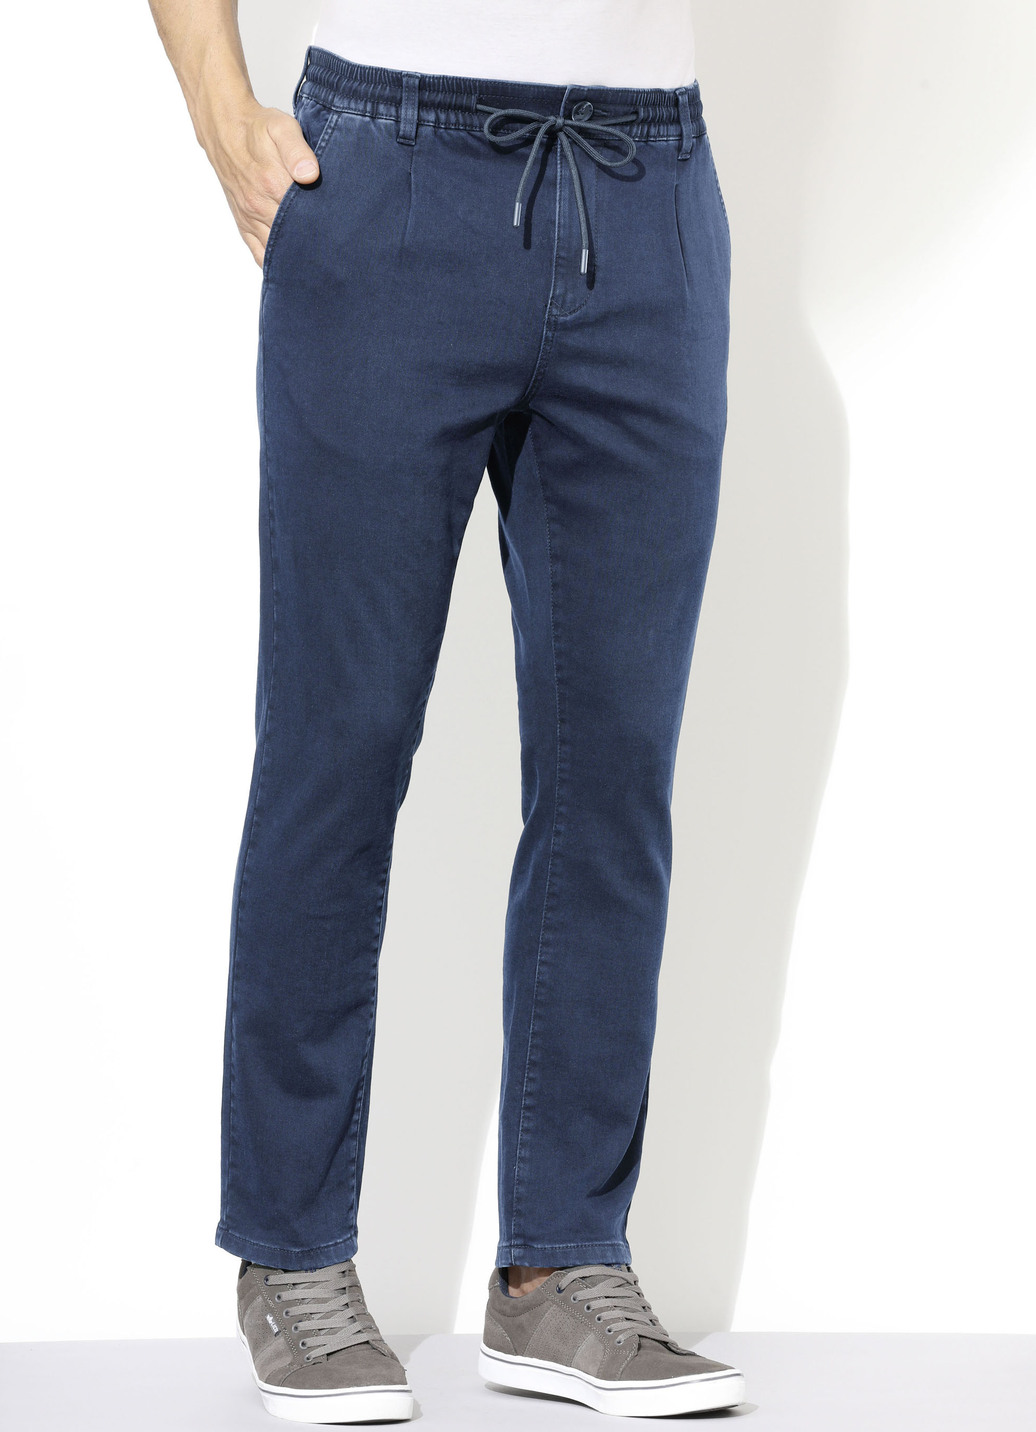 Superstretch-Jeans in 3 Farben, Jeansblau, Größe 26 von DANNECKER